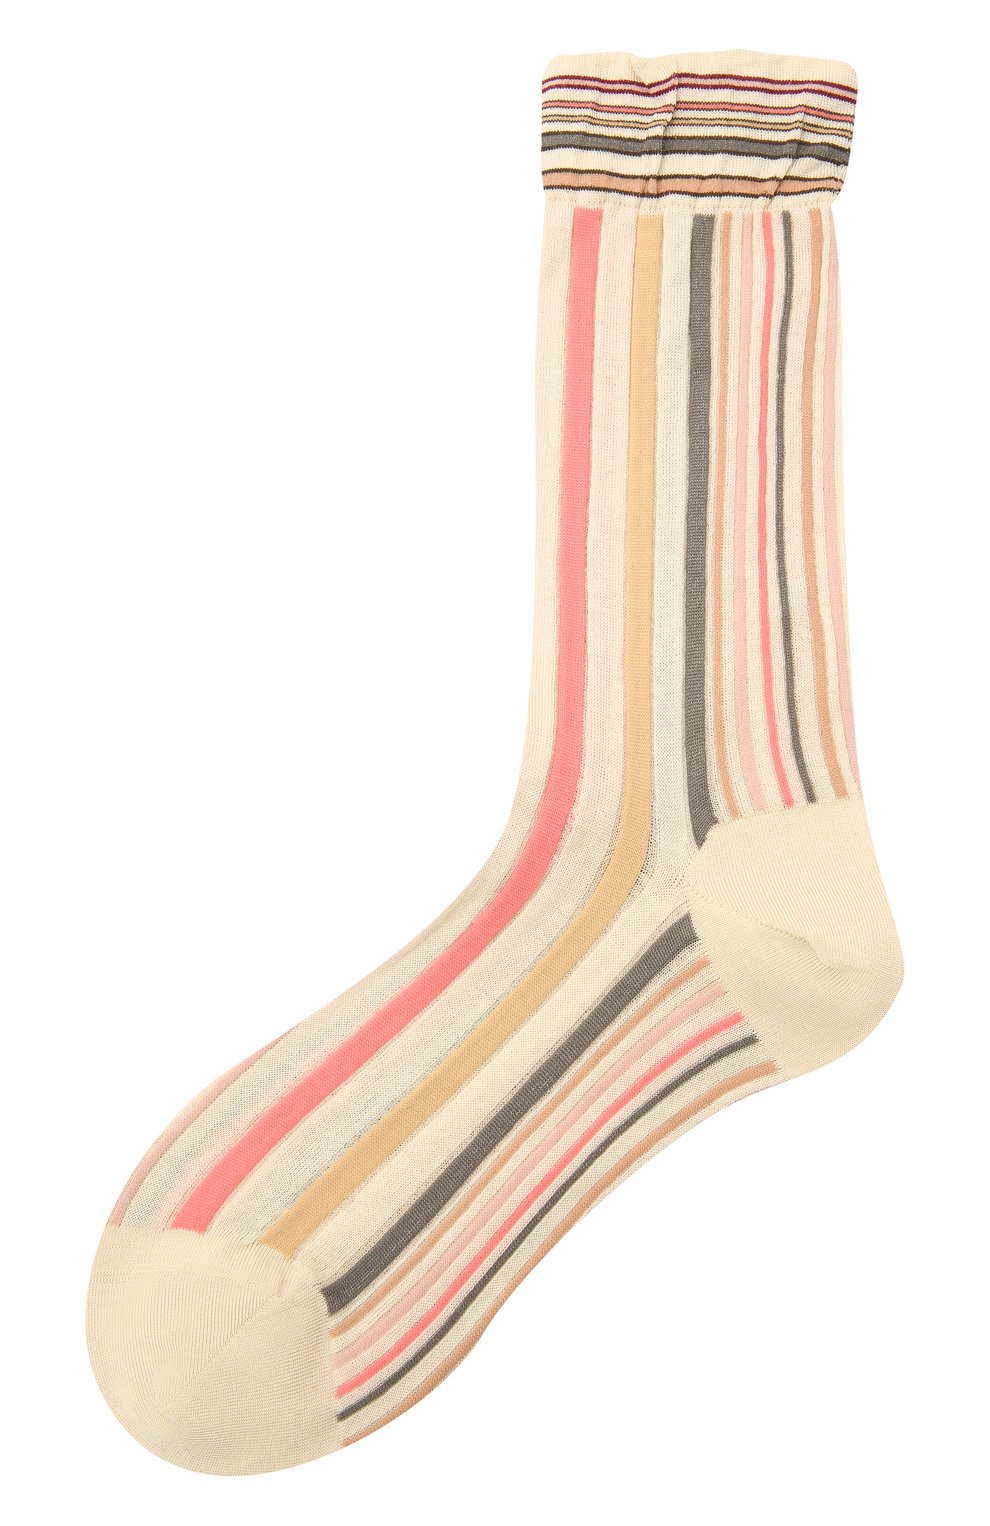 Женские хлопковые носки ANTIPAST разноцветного цвета, арт. AM-287A | Фото 1 (Материал внешний: Синтетический материал, Хлопок)